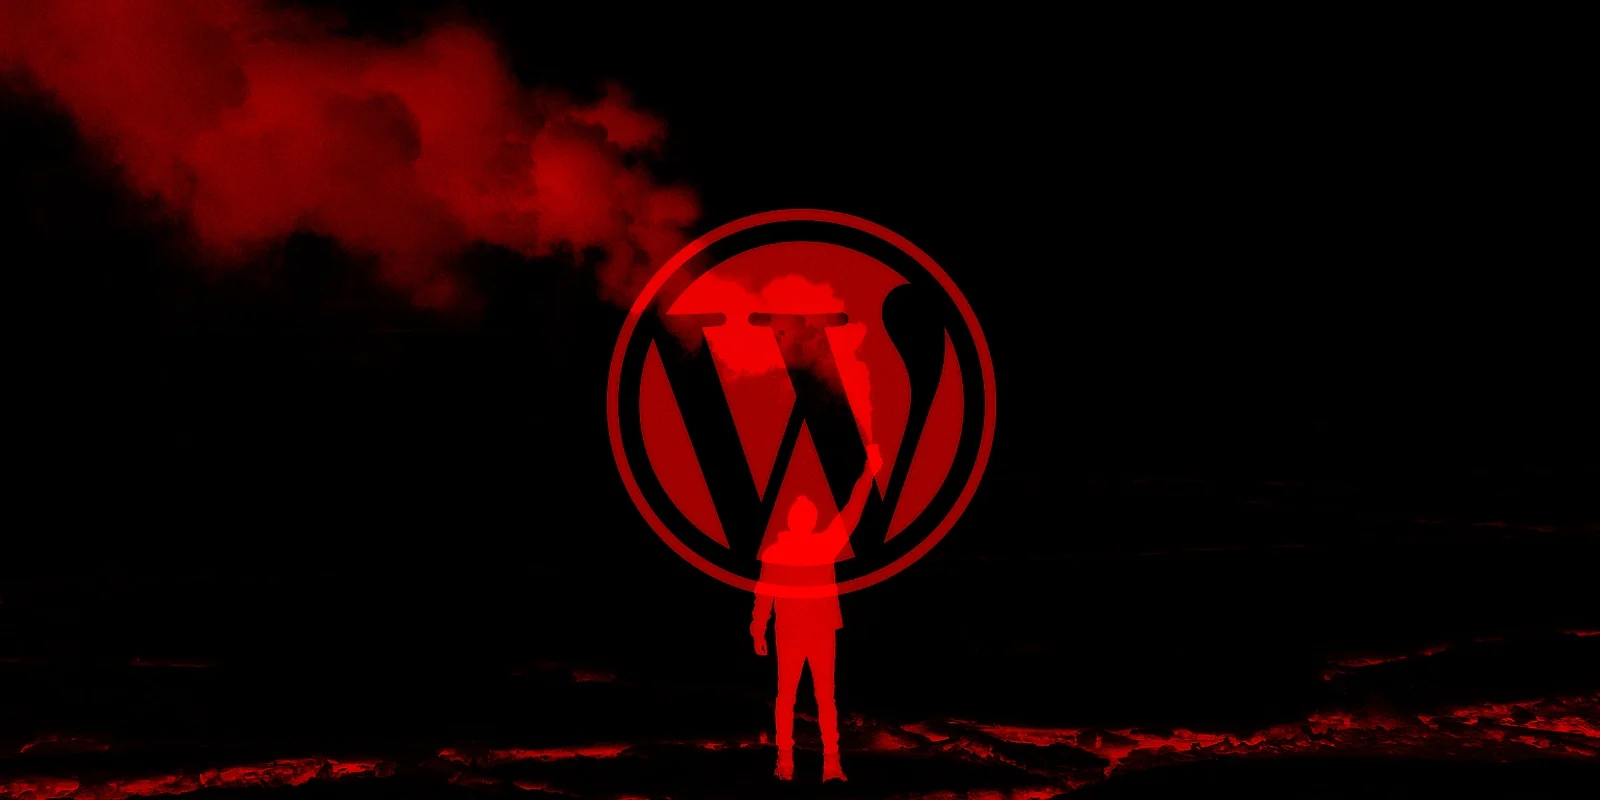 takian.ir wordpress sites hacked with fake cloudflare ddos alerts pushing malware 1